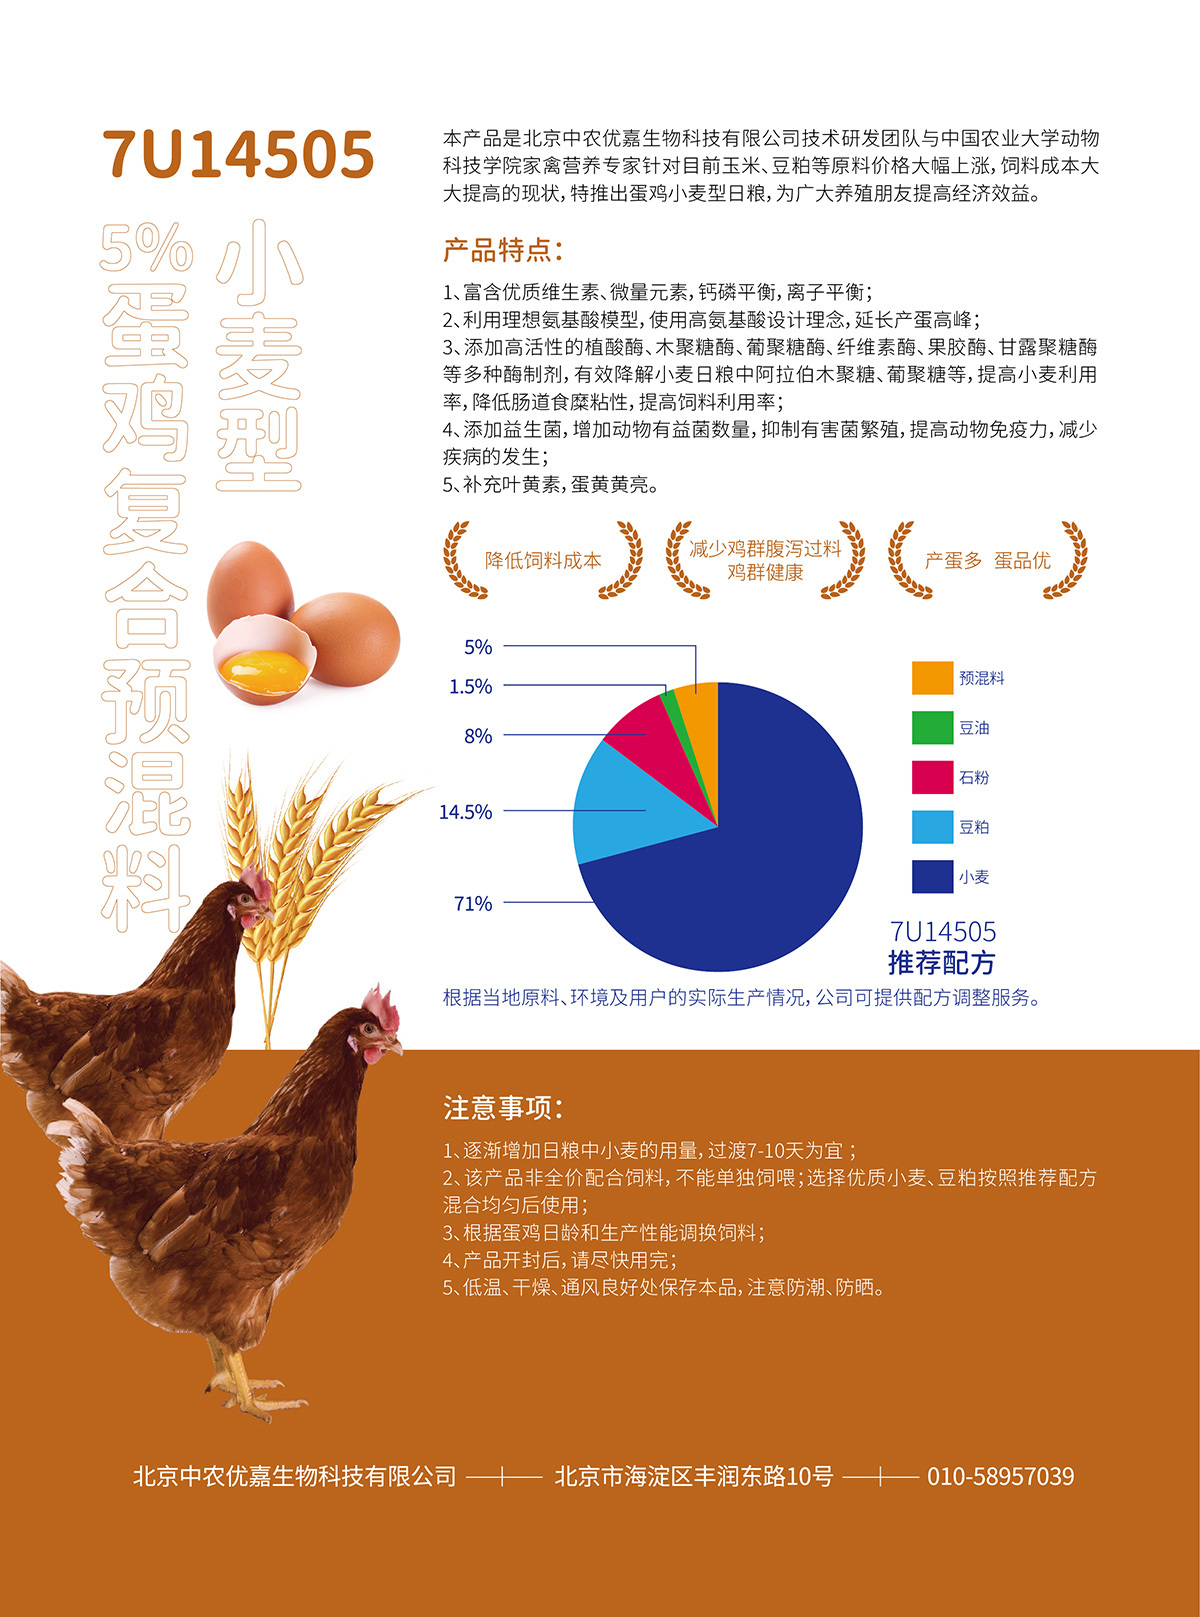 7U14505 5%蛋鸡复合预混料(小麦型)